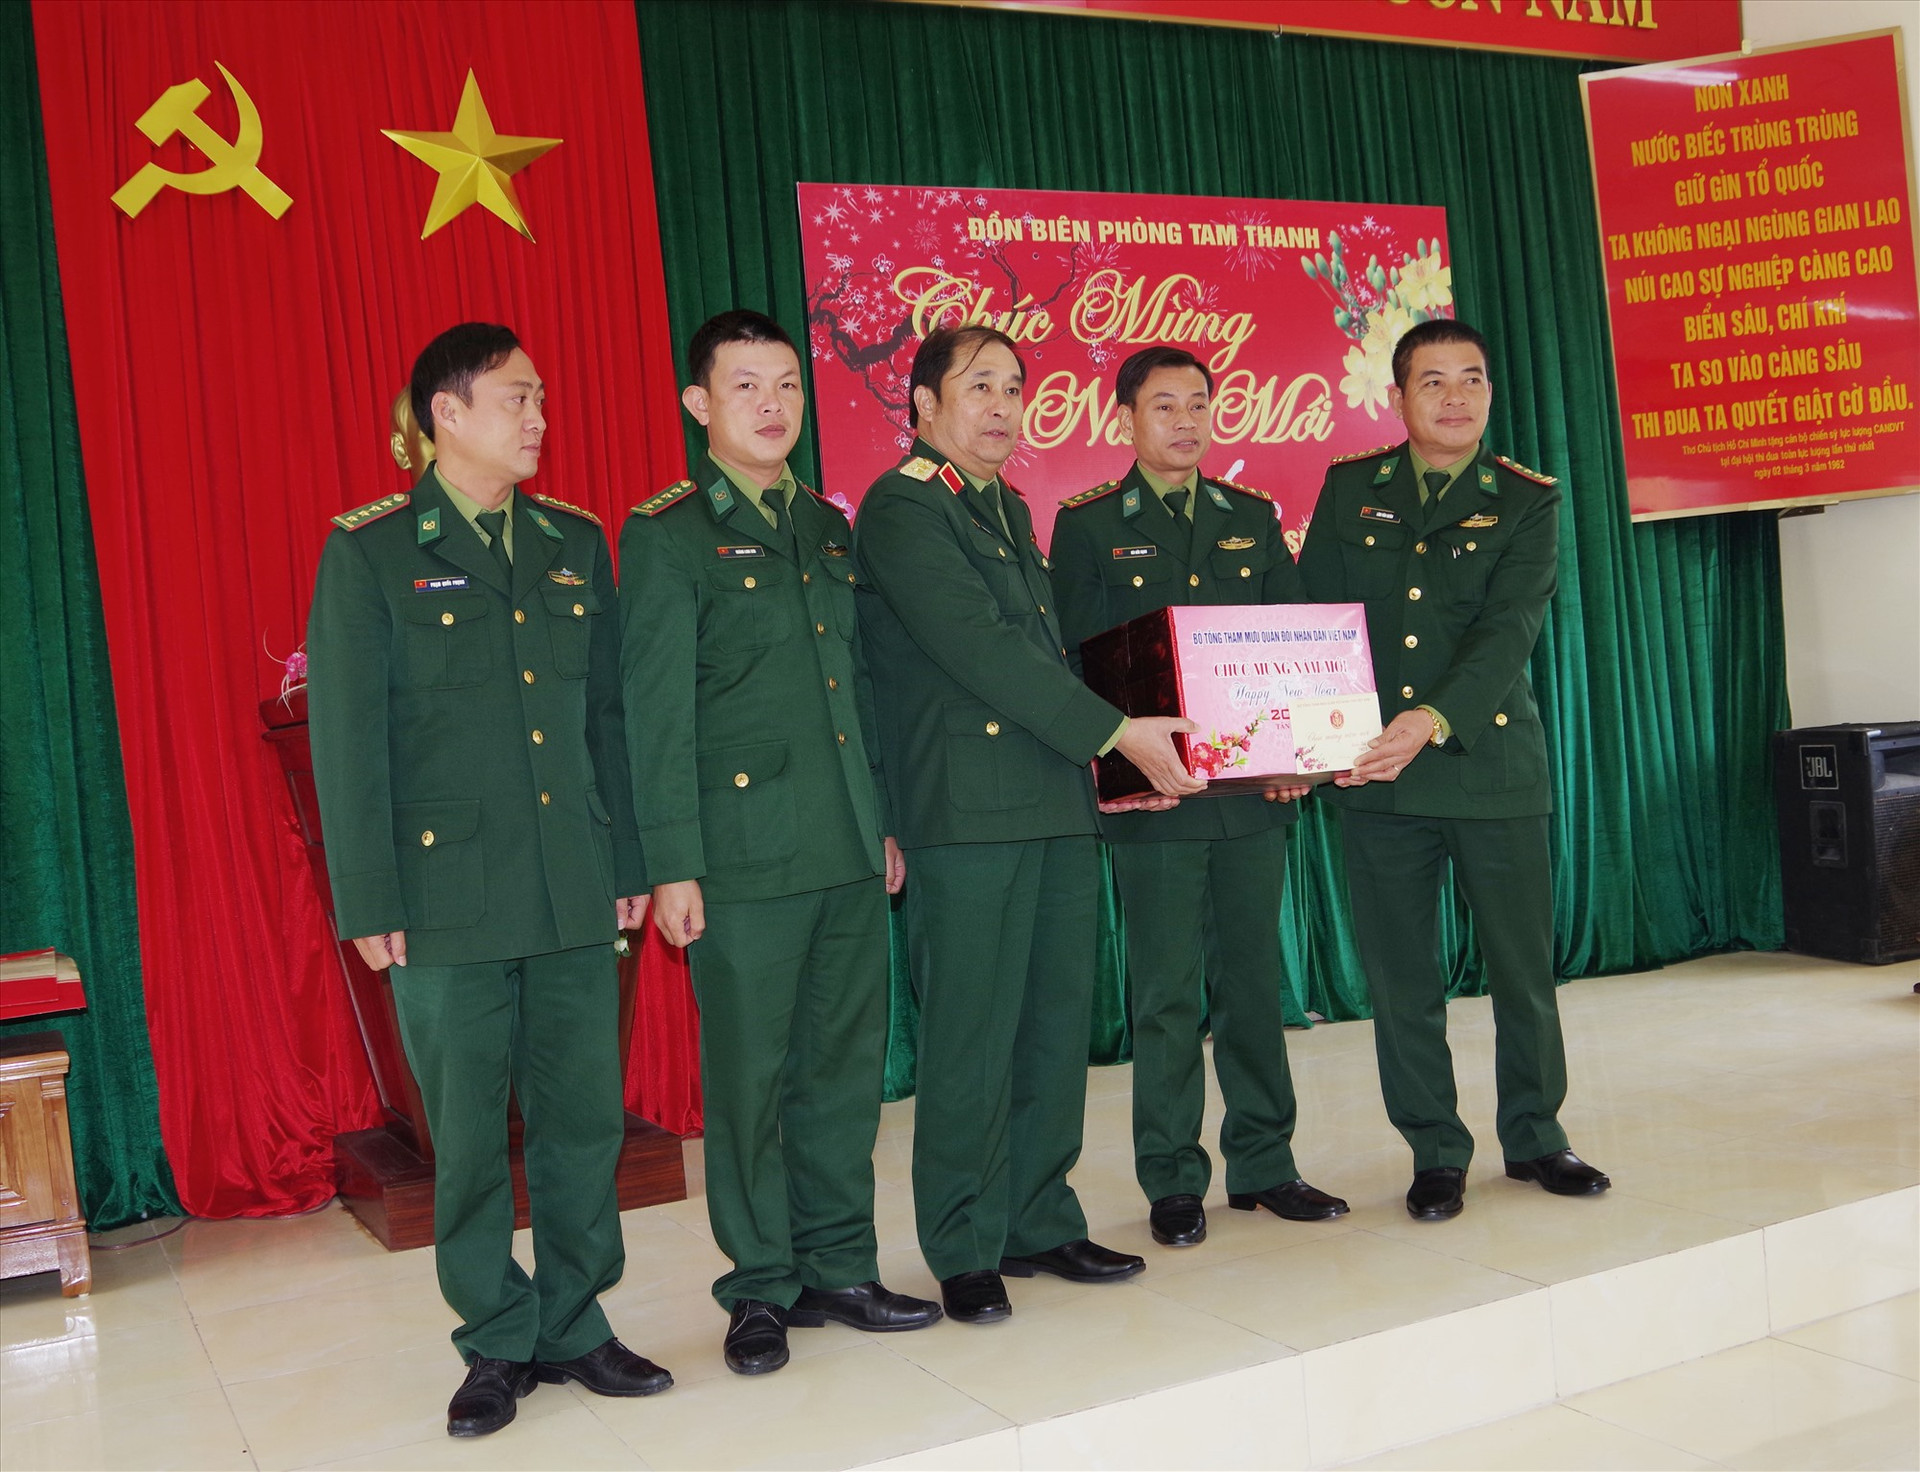 Phó Tổng Tham mưu trưởng QĐND Việt Nam tặng quà tết cán bộ, chiến sĩ Đồn Biên phòng Tam Thanh. Ảnh: HỒNG ANH